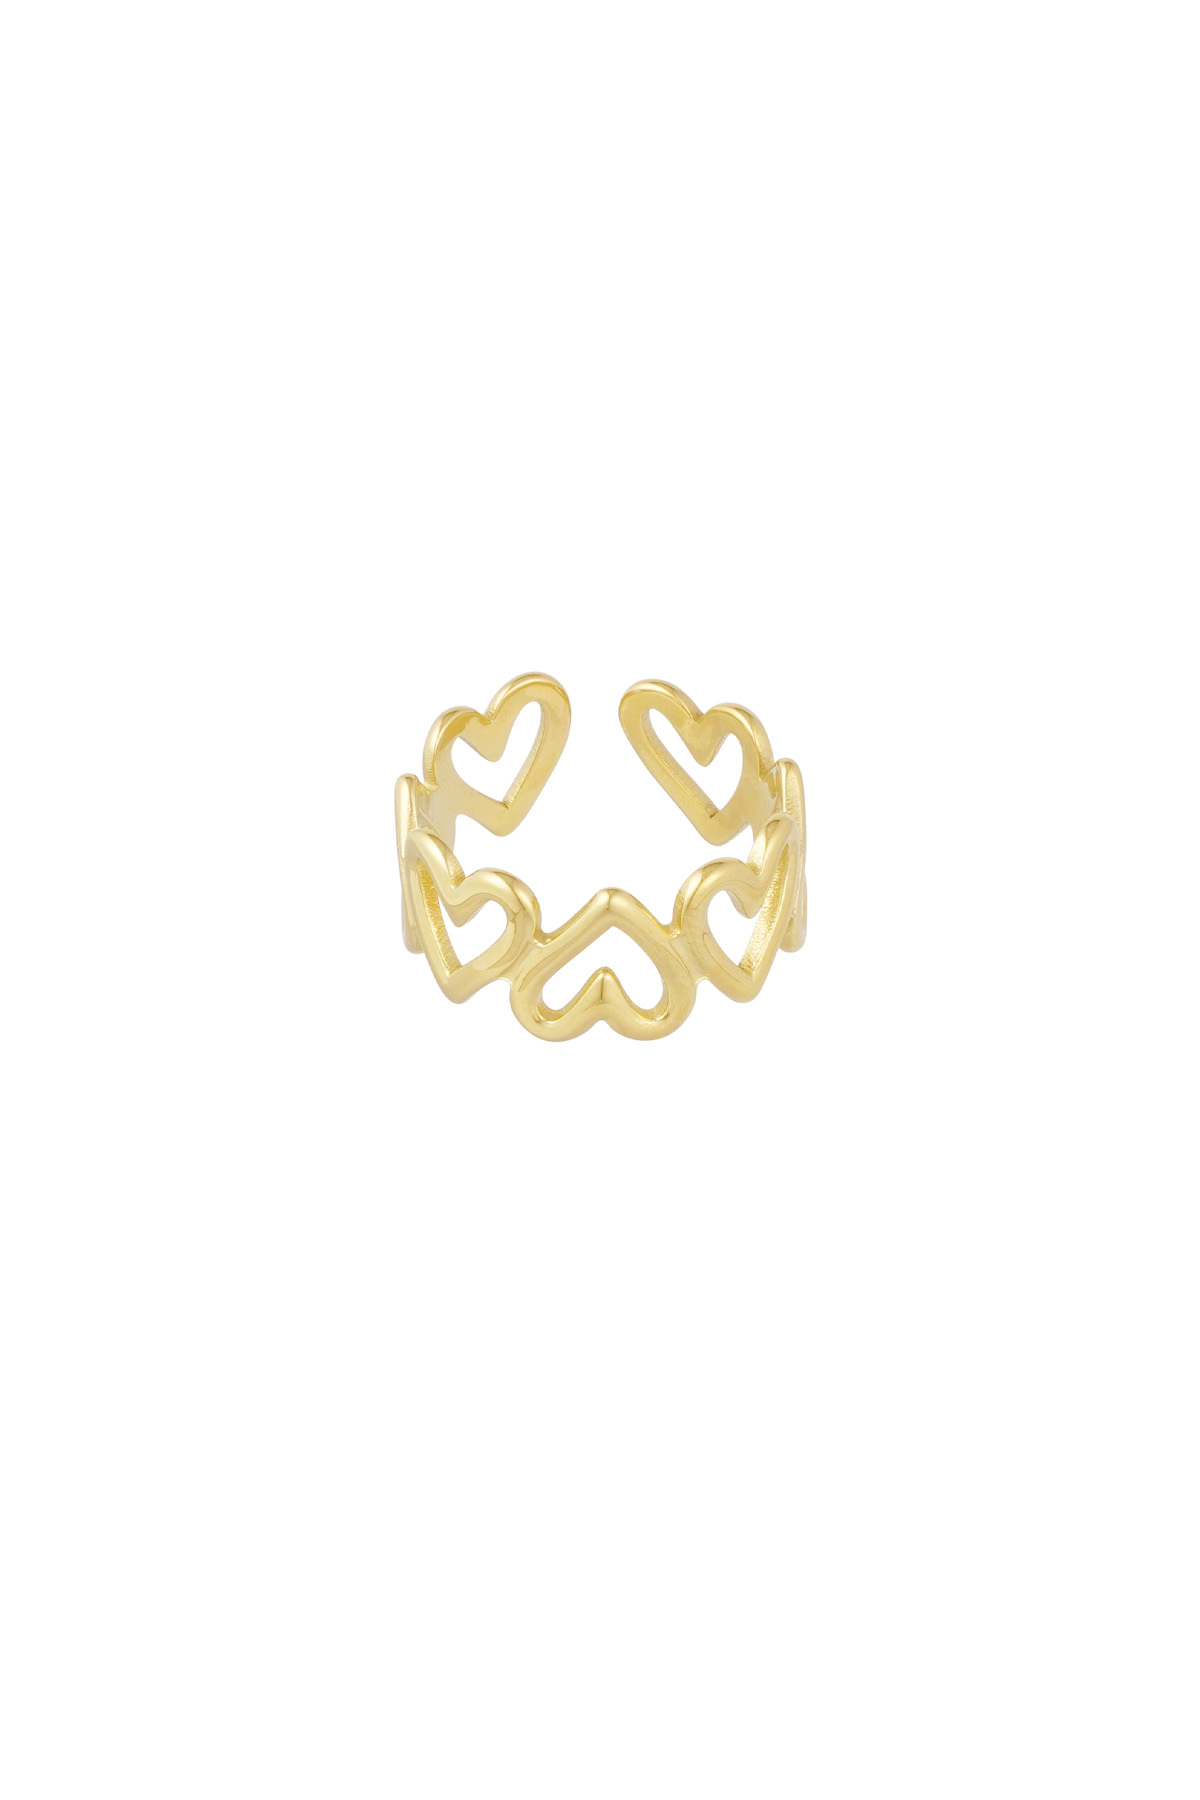 Bükülmüş aşk yüzüğü - altın h5 Resim5